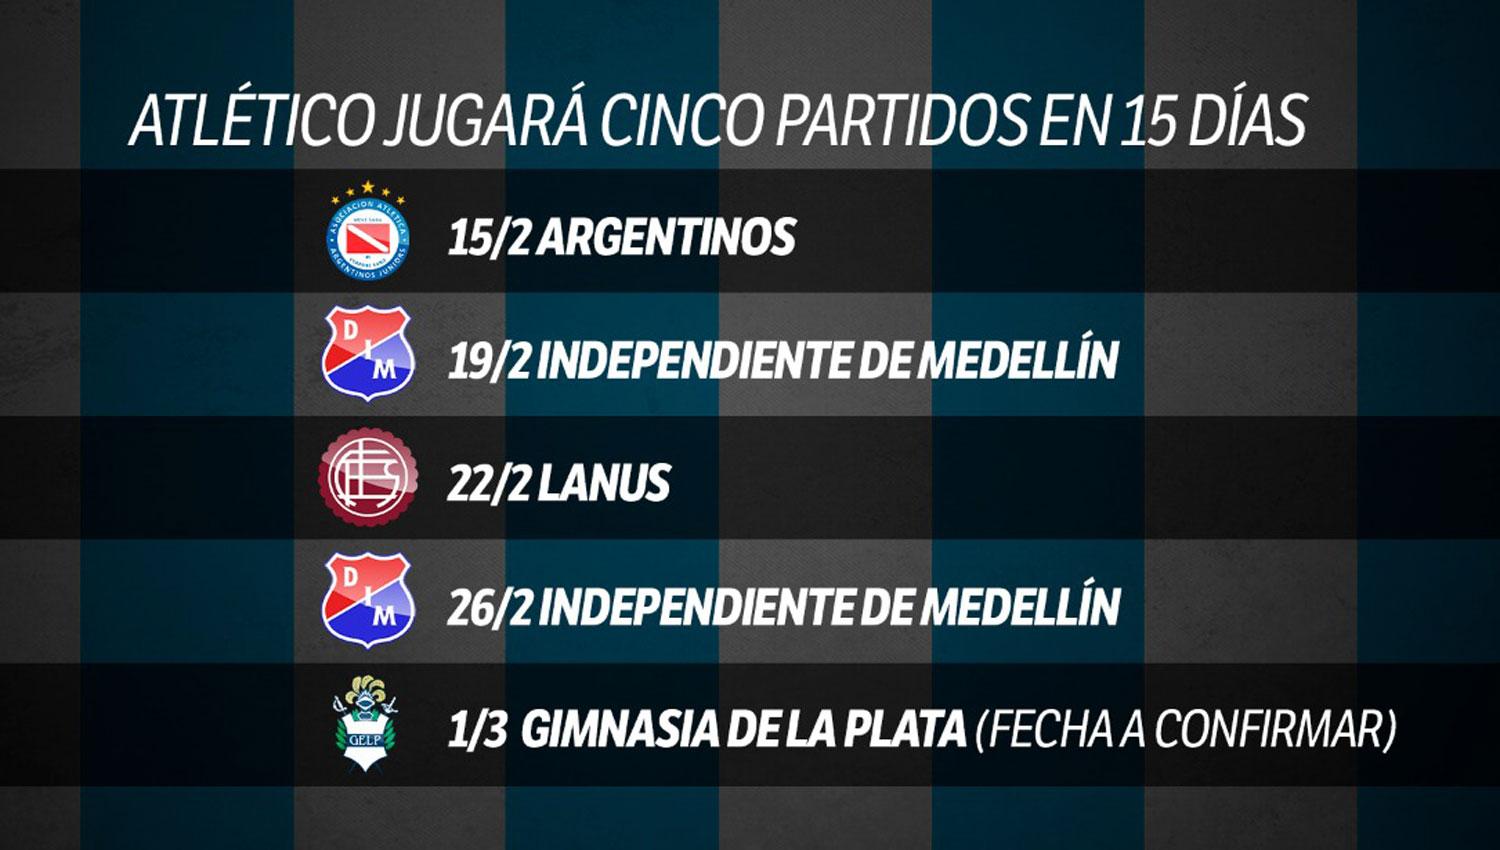 Agenda apretada: estos son los cinco partidos que Atlético jugará en los próximos 15 días